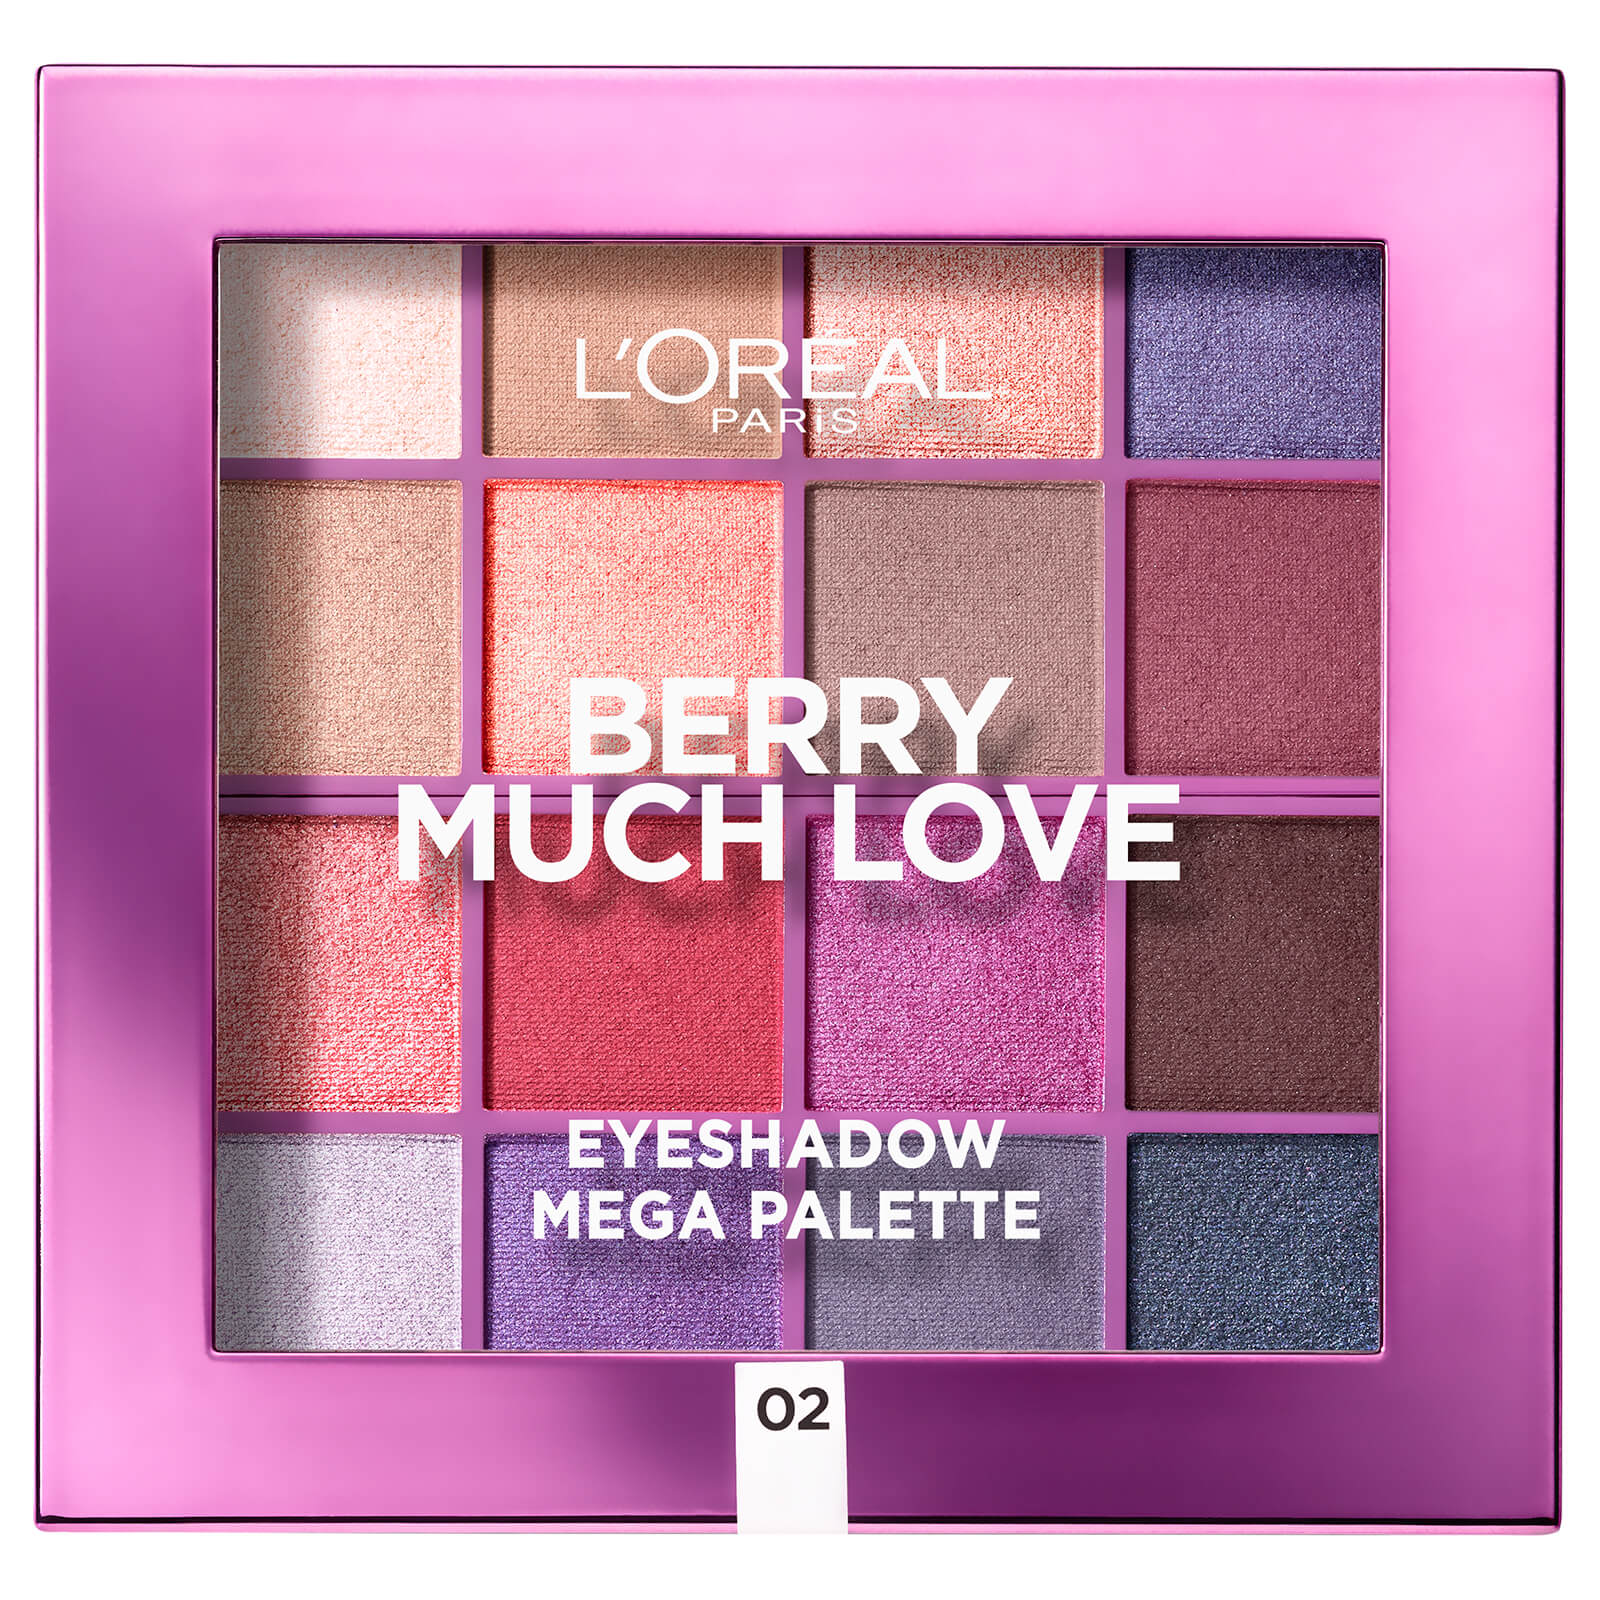 L’Oréal Paris Paradise Pastel Eyeshadow Palette – Berry Much lookfantastic.com imagine